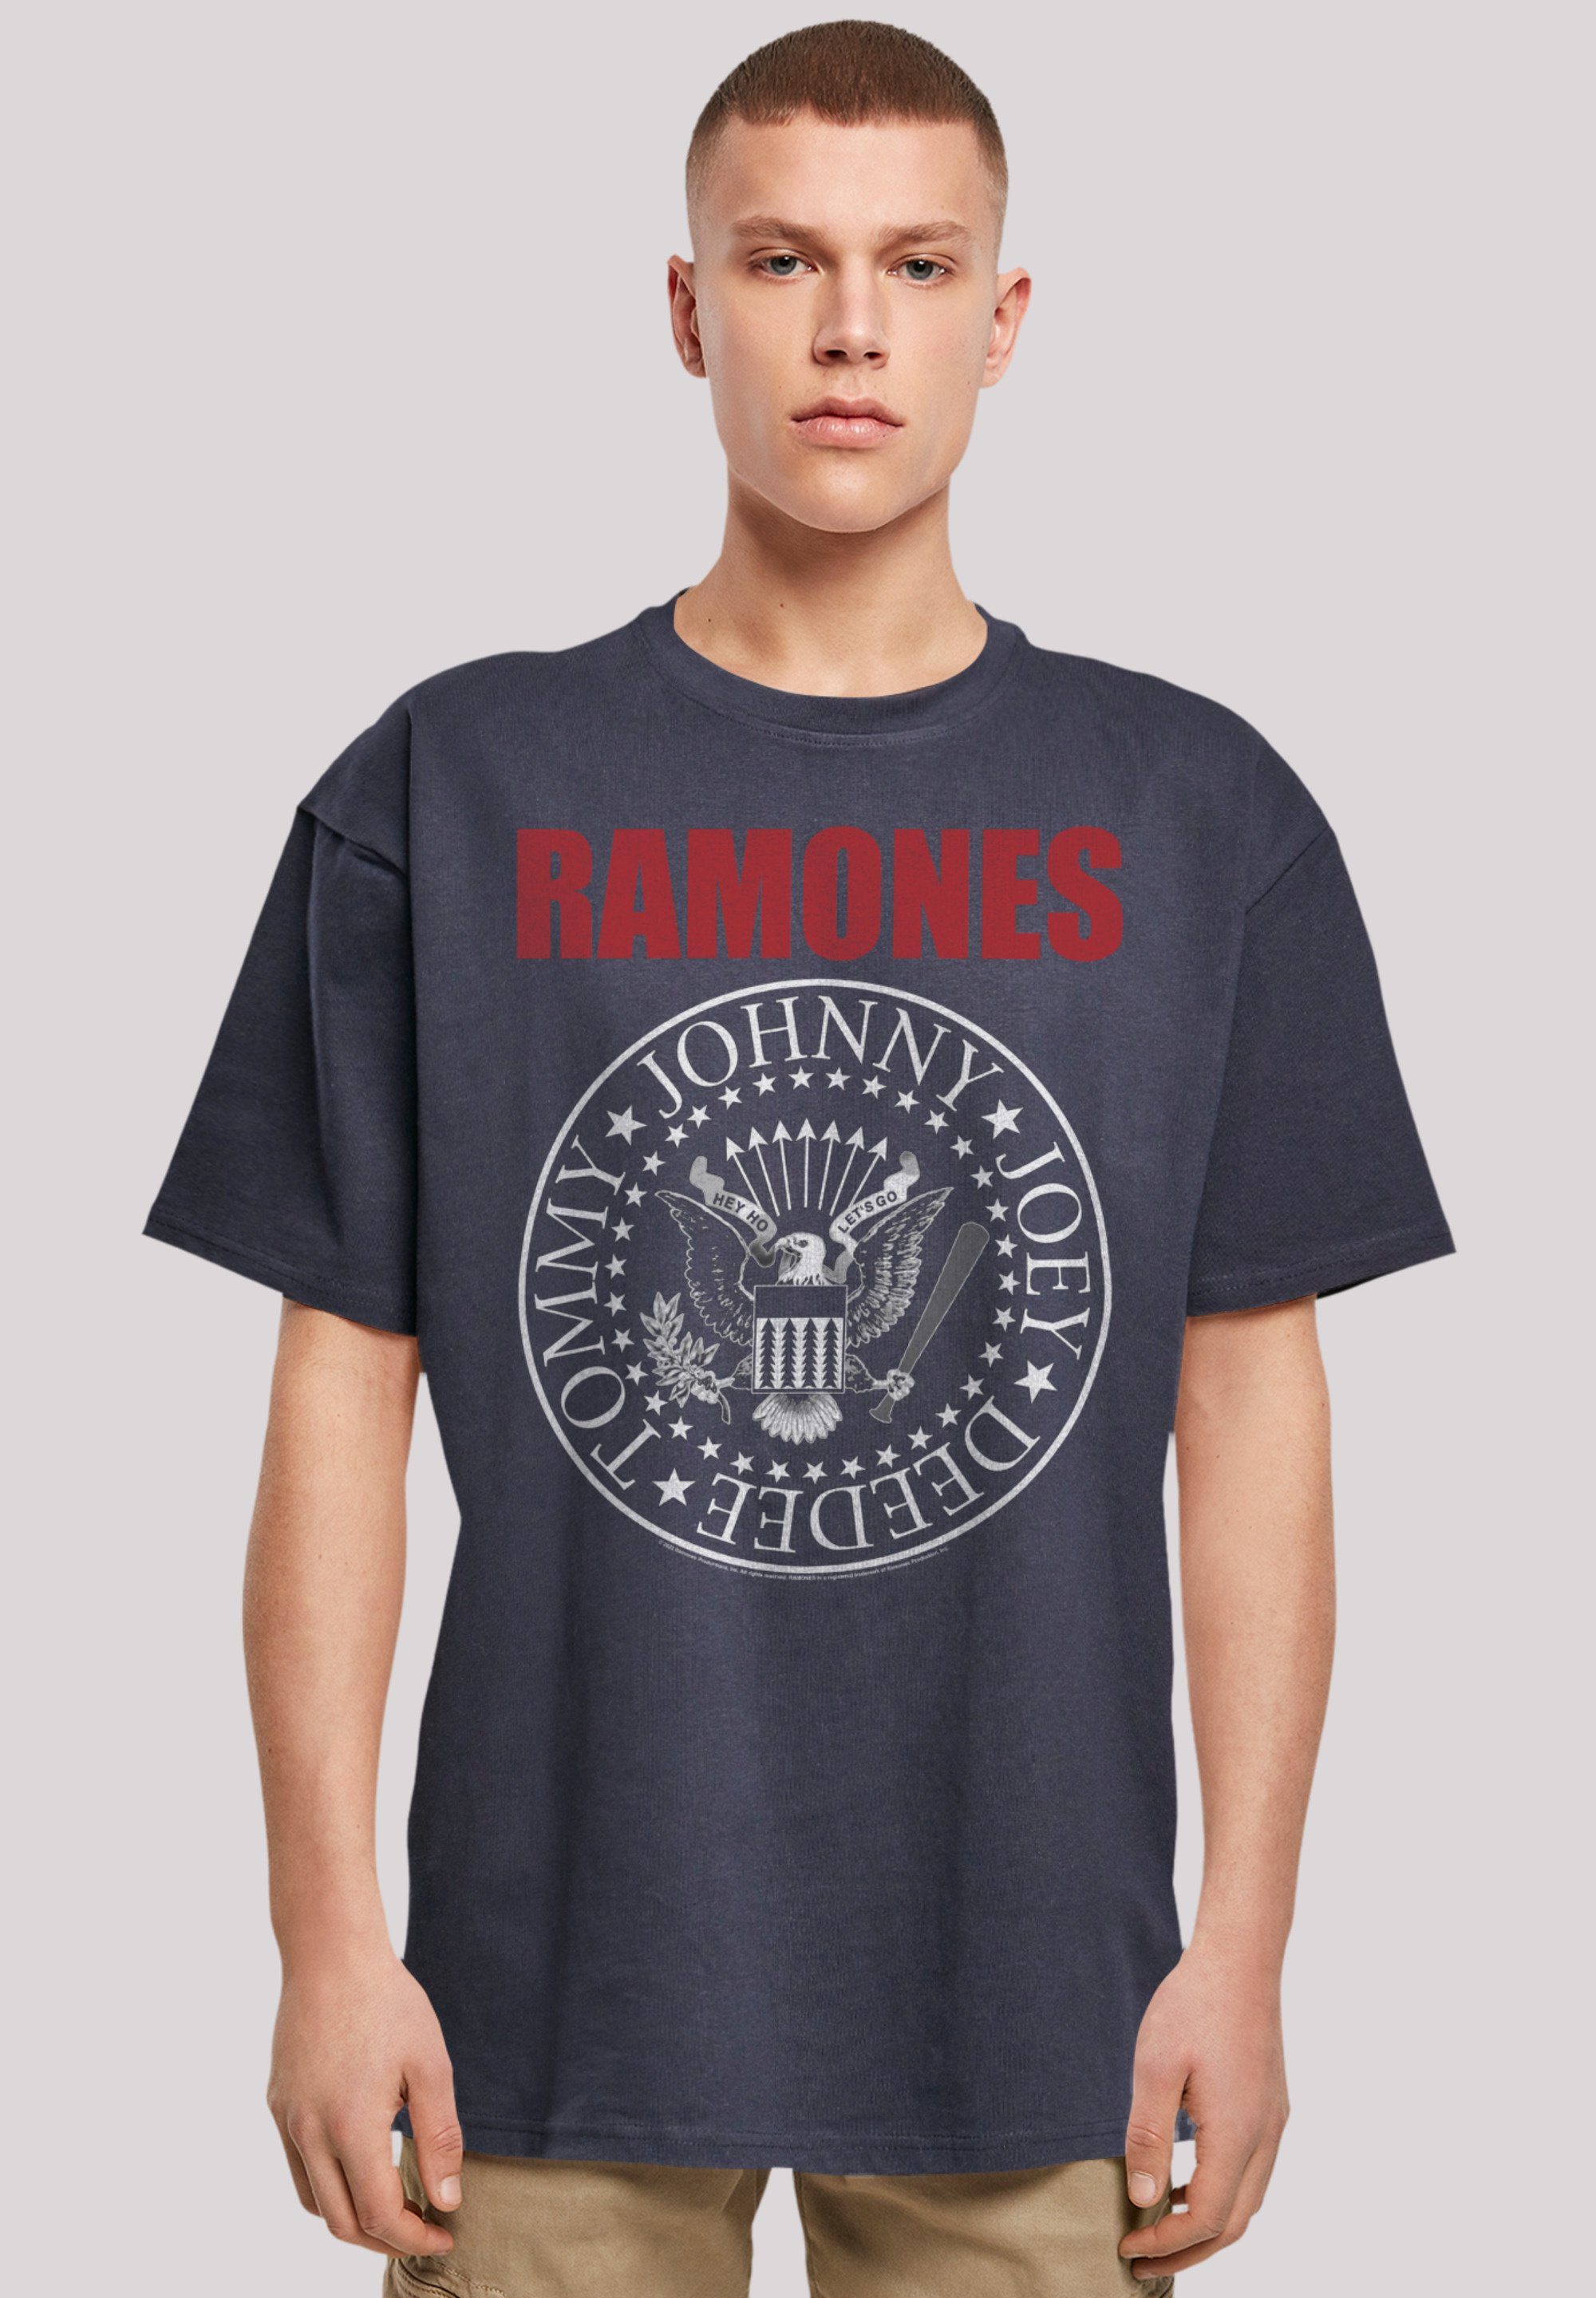 F4NT4STIC T-Shirt Rock-Musik, Seal und Qualität, Premium Rock Text überschnittene Ramones Schultern Band, Musik Passform Weite Red Band